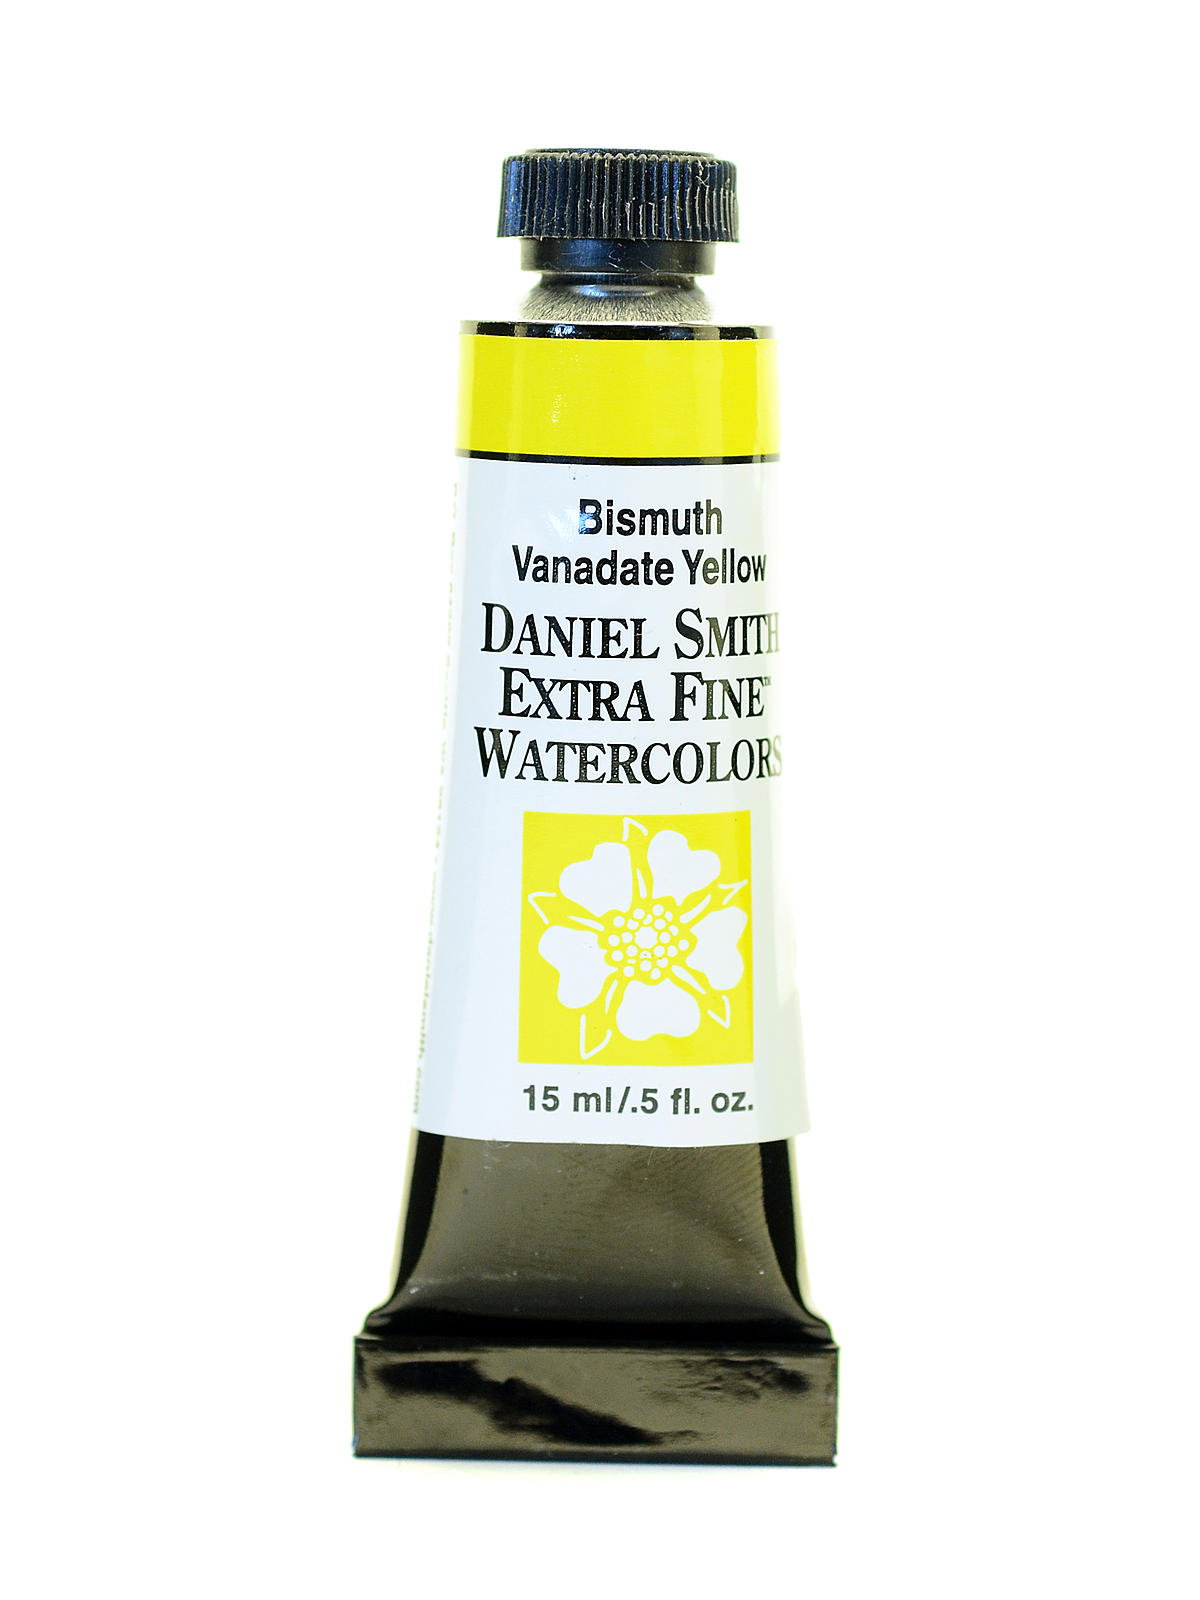 Daniel Smith Extra Fine Watercolor - Verona Gold Ochre 15 ml